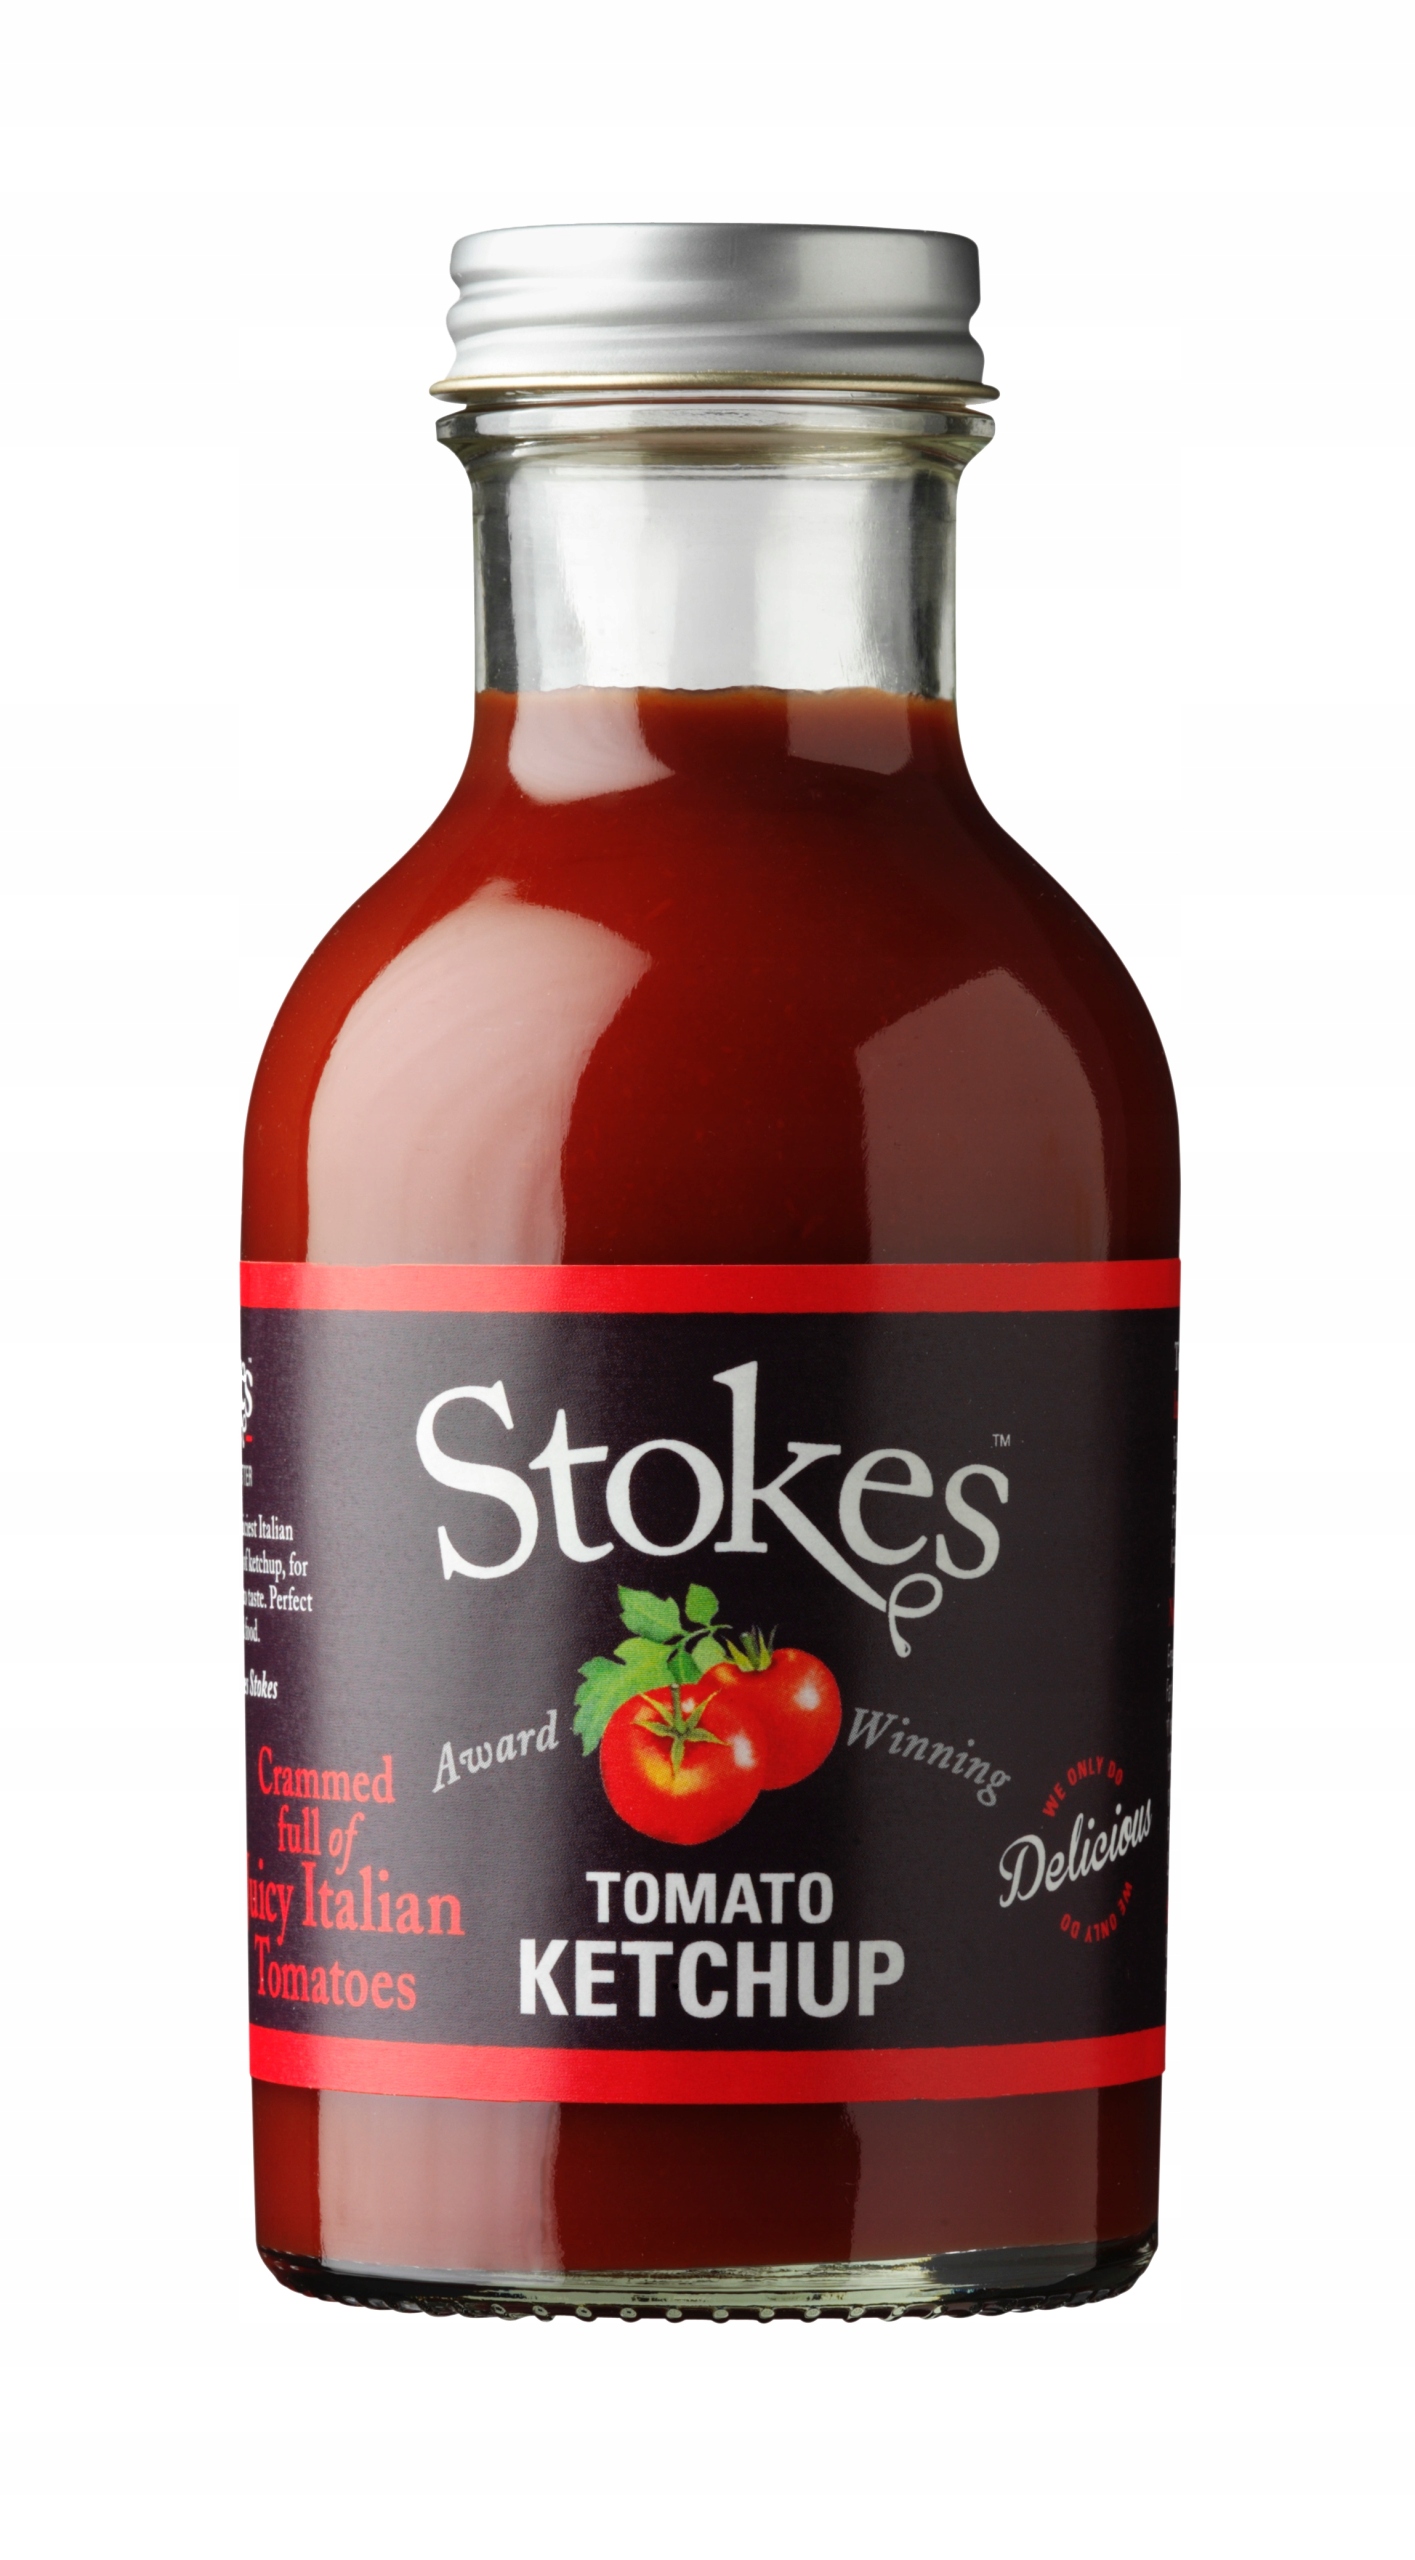 Stokes sladký kečup 200% stredomorských paradajok